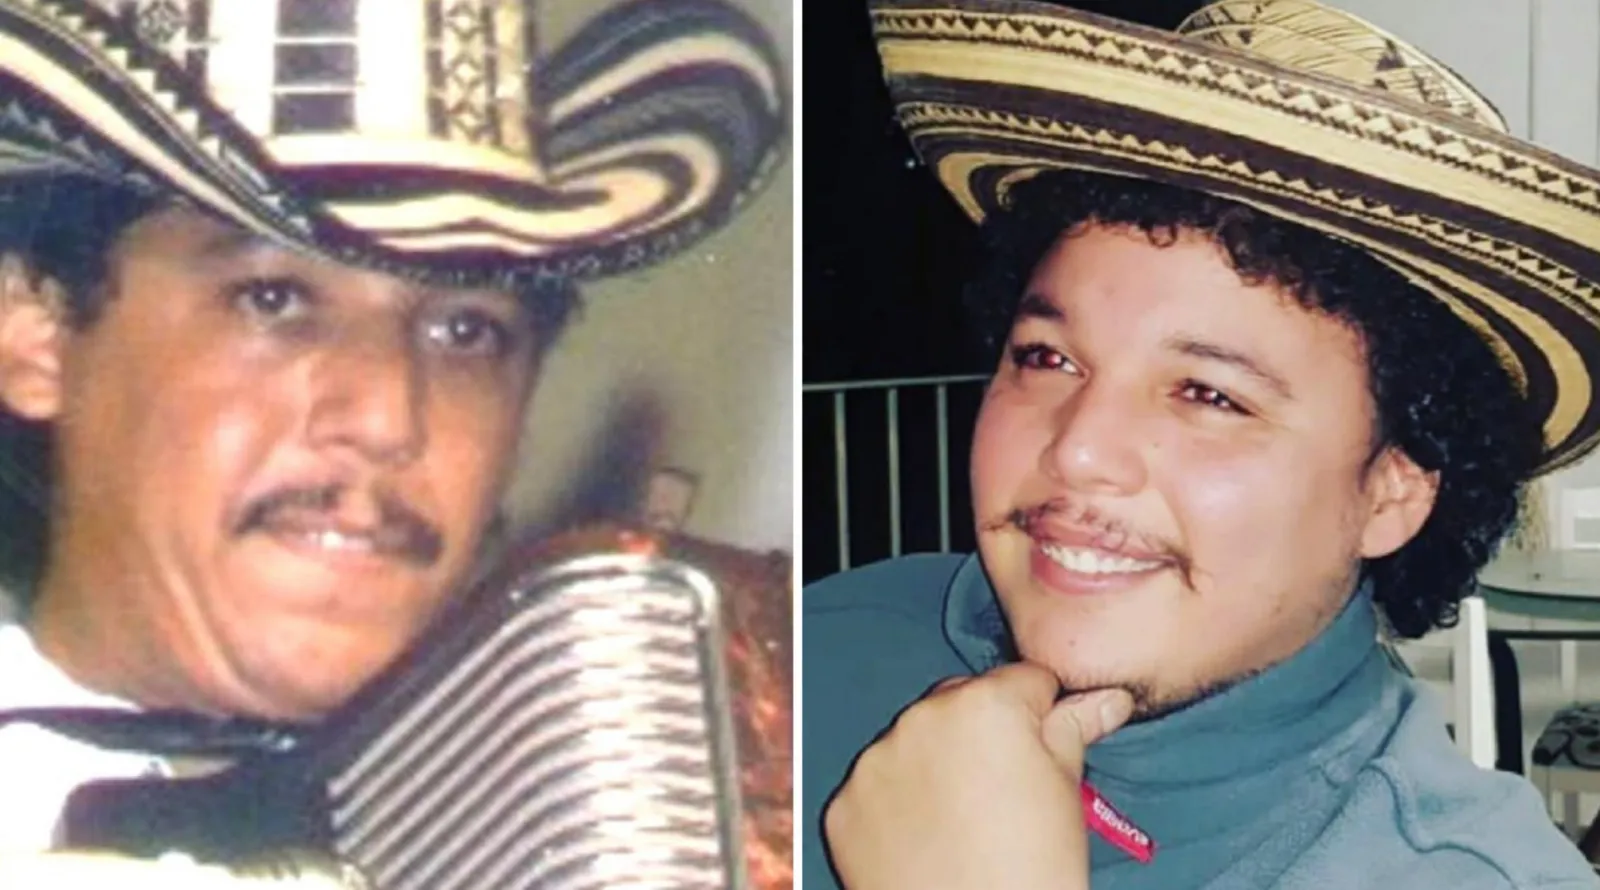 El mundo vallenato está sorprendido por un joven muy parecido a Juancho Rois